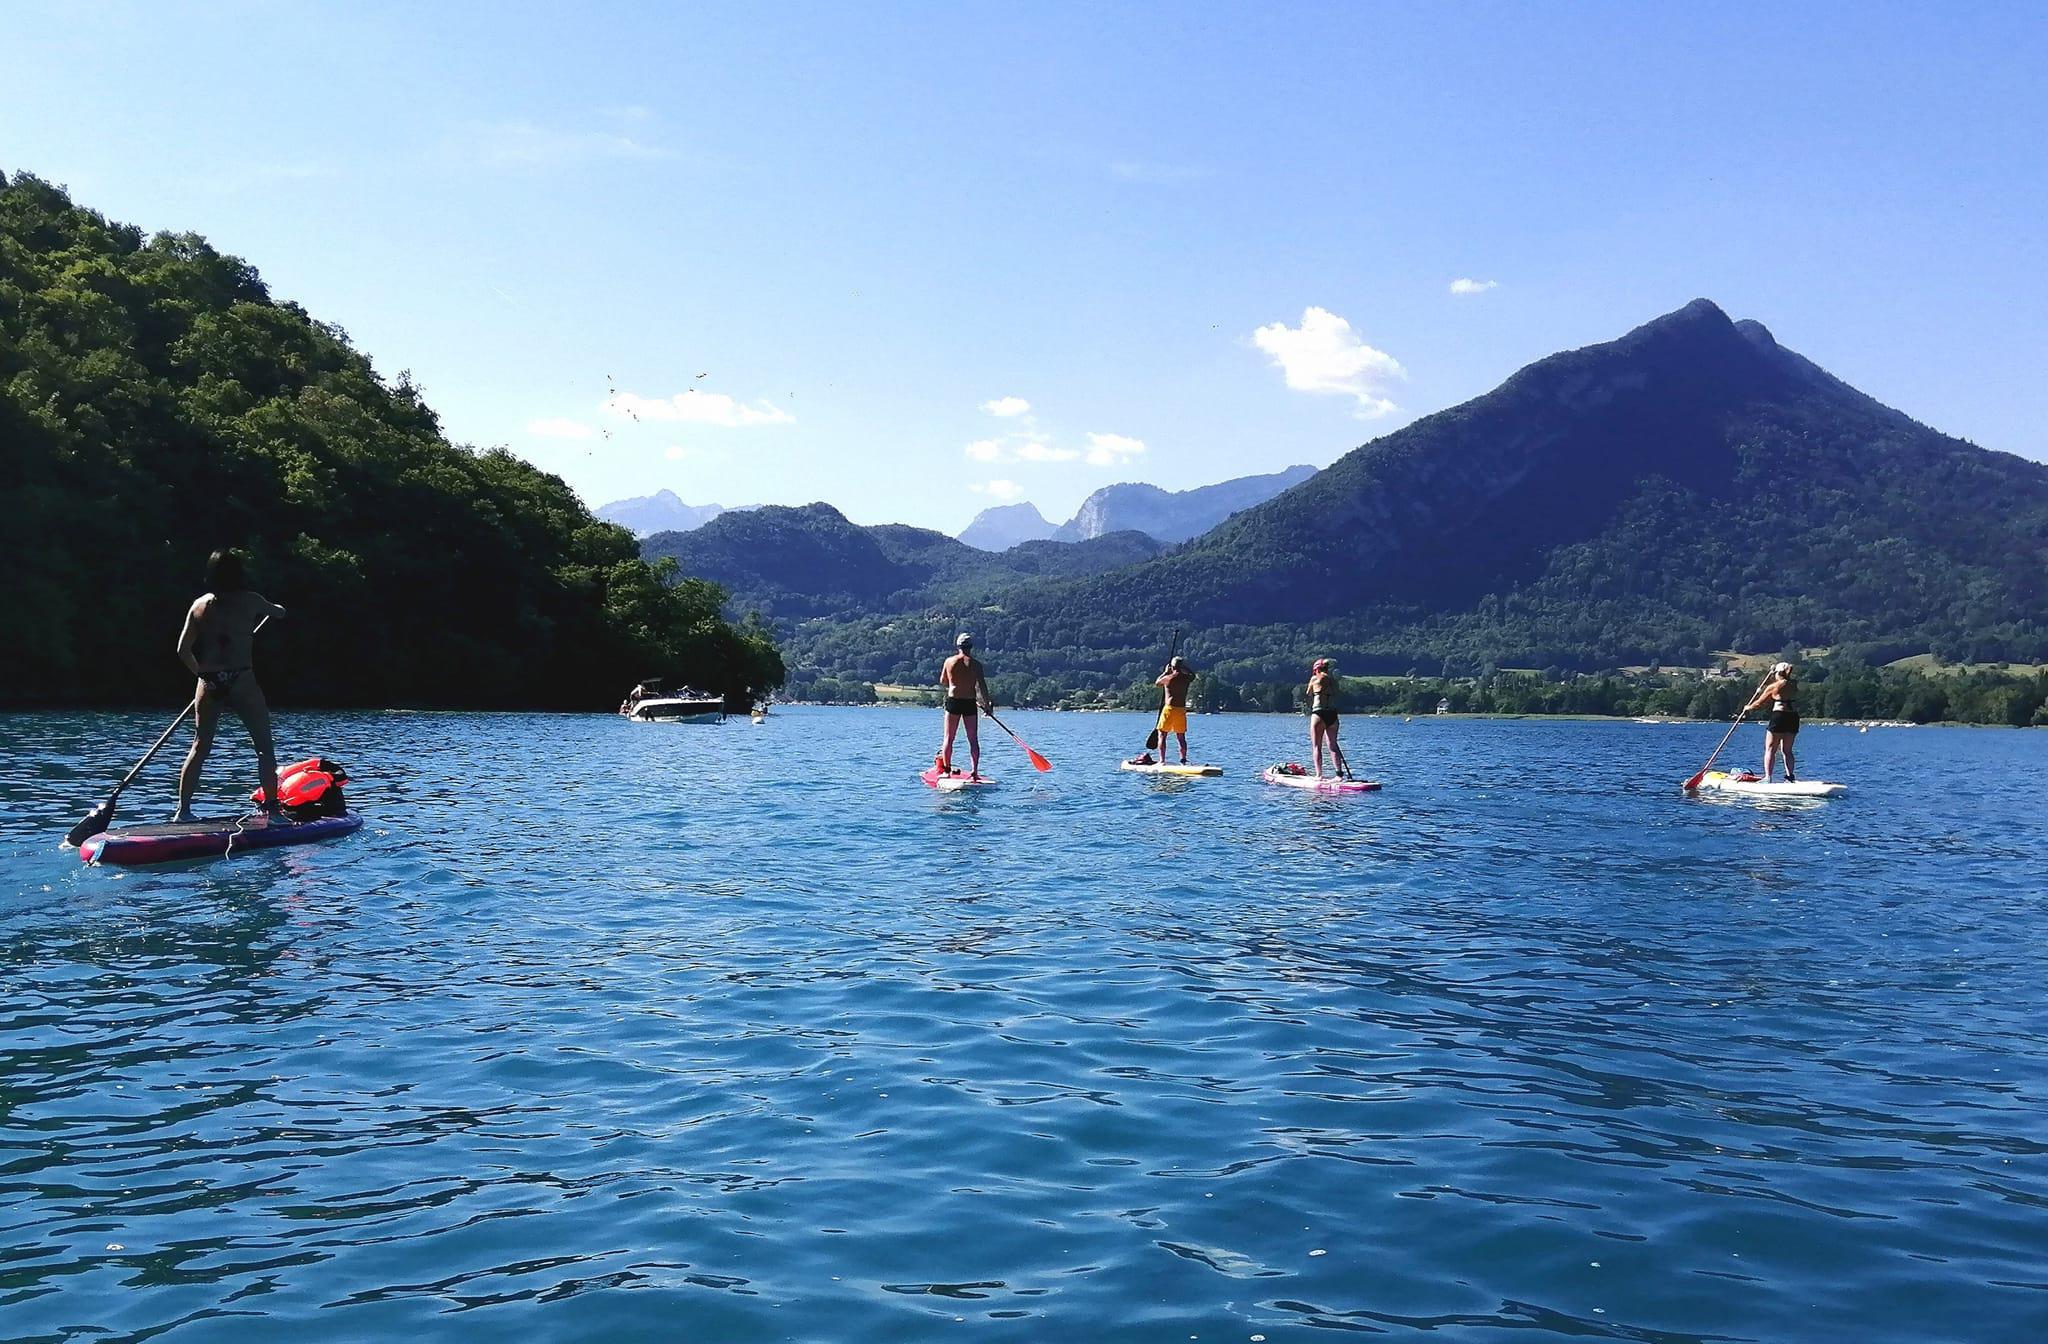 Le lac d’Annecy abrite de nombreux spots où profiter d’excursions en paddle cet été, loin des touristes.